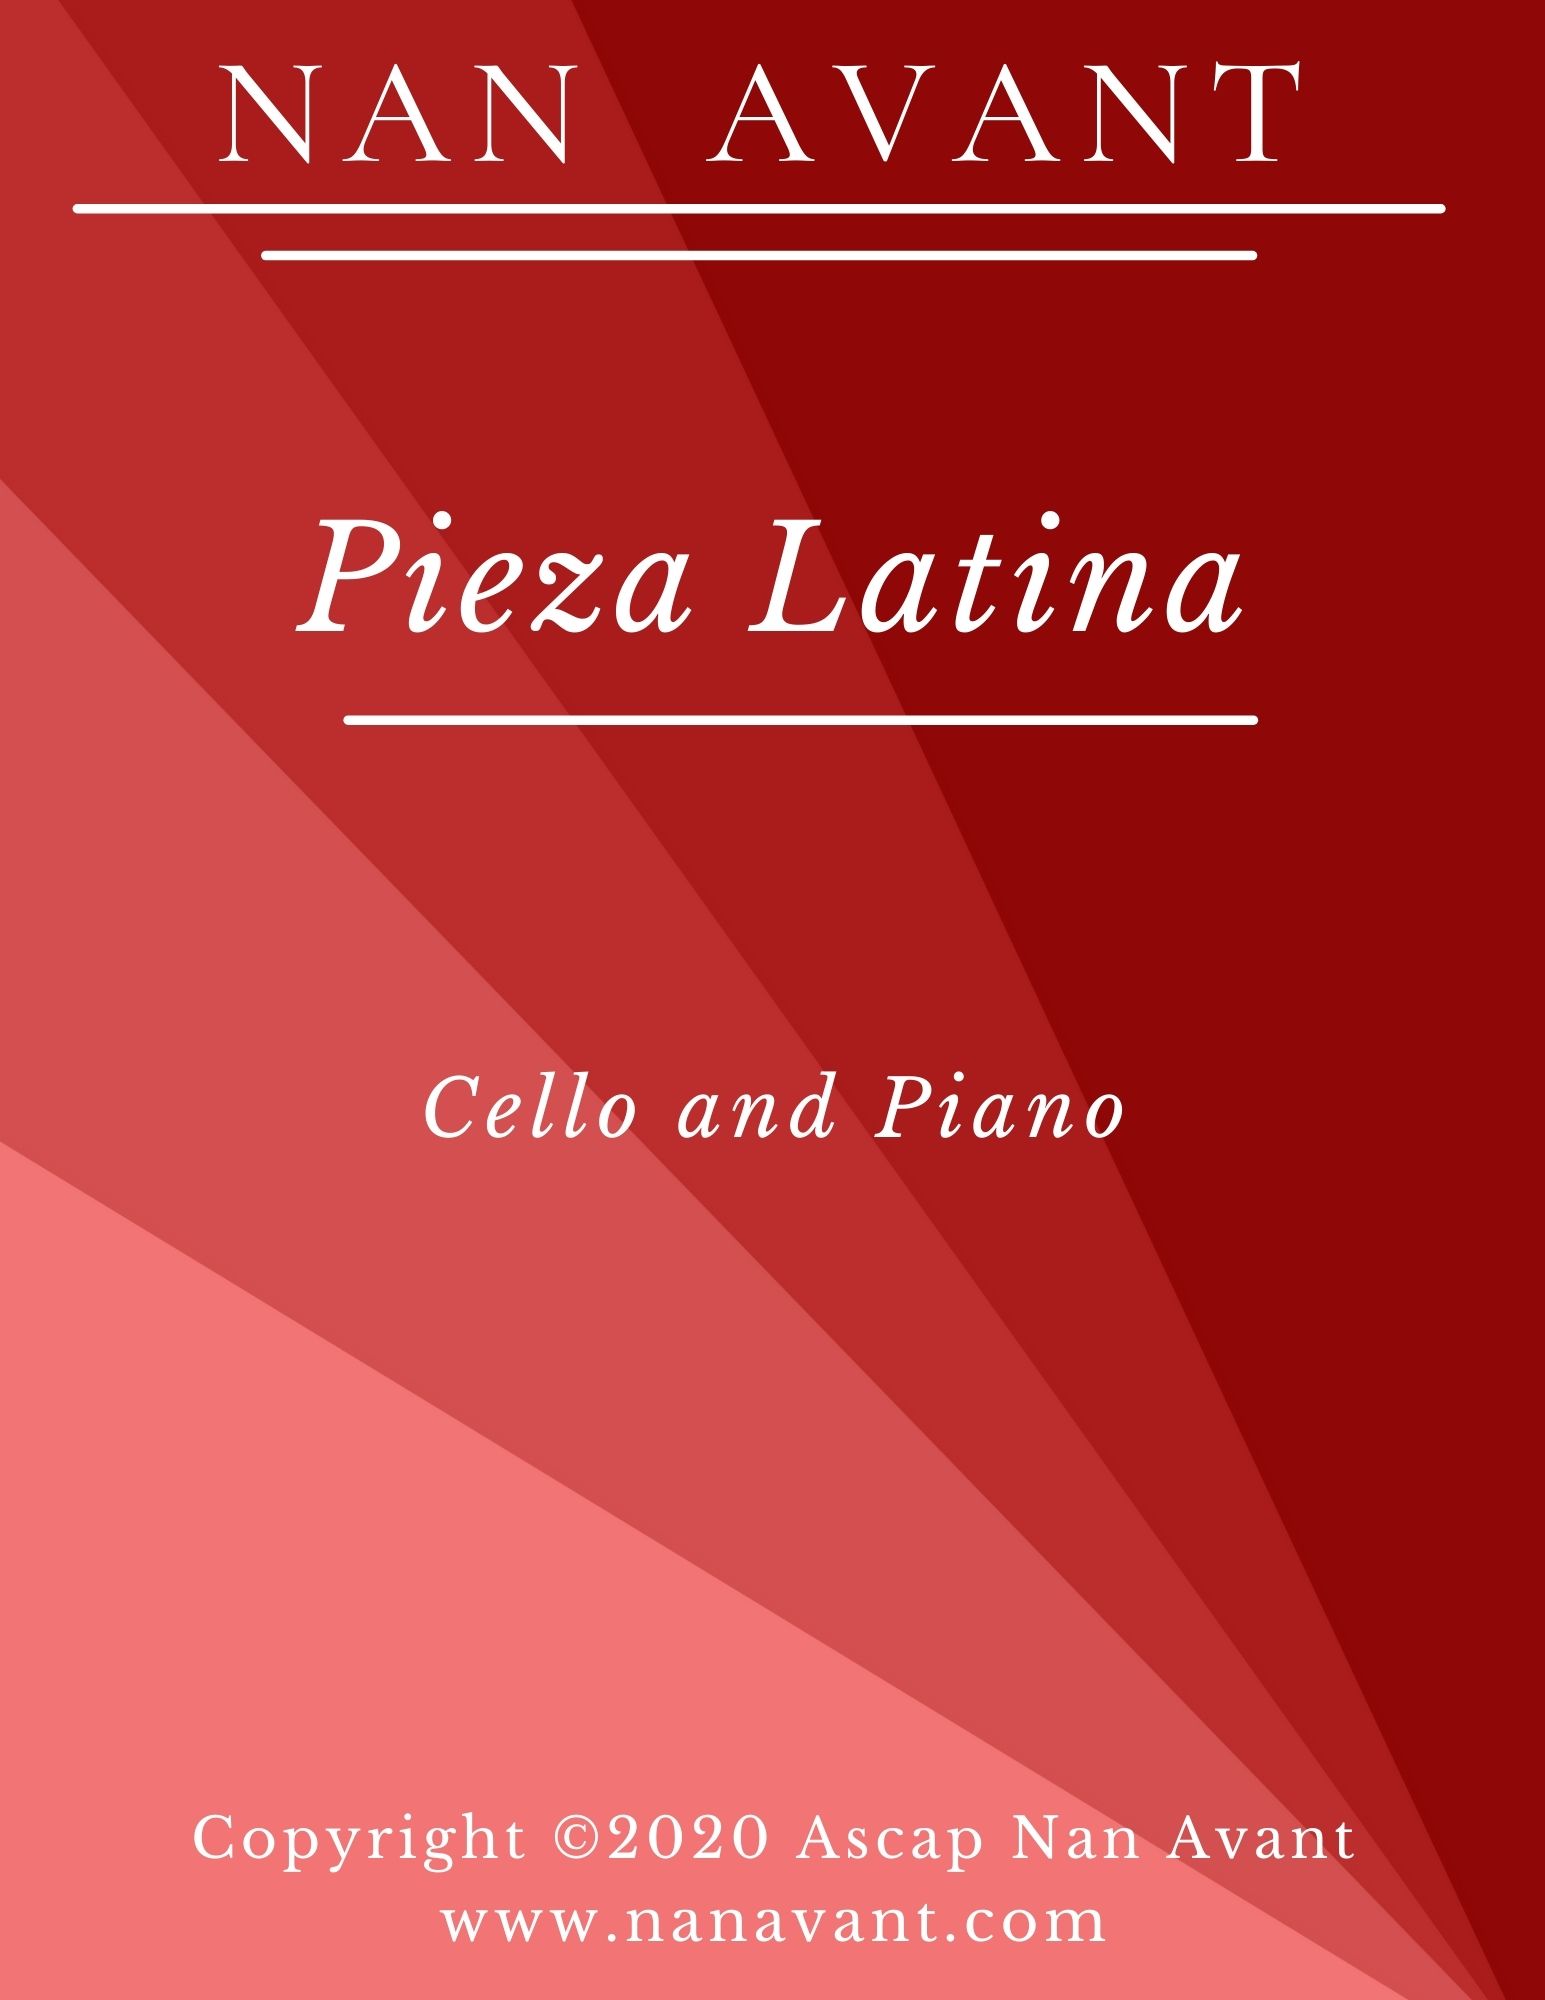 Pieza latina cello and piano cover